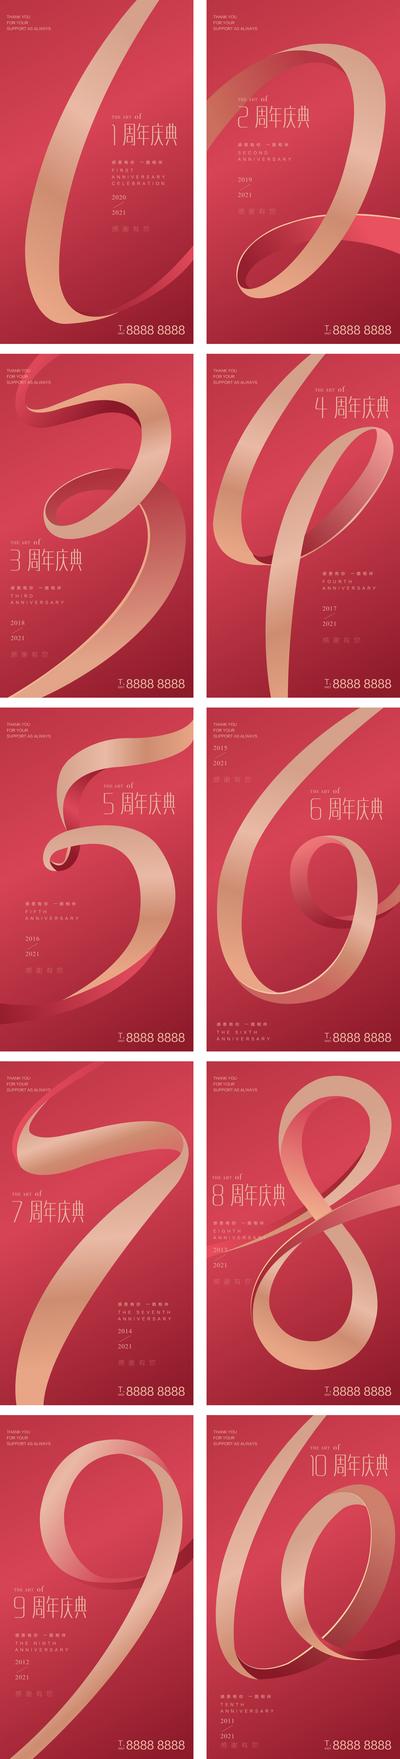 南门网 广告 海报 系列 倒计时 数字 周年庆 飘带 红金 医美 庆典 盛典 周年